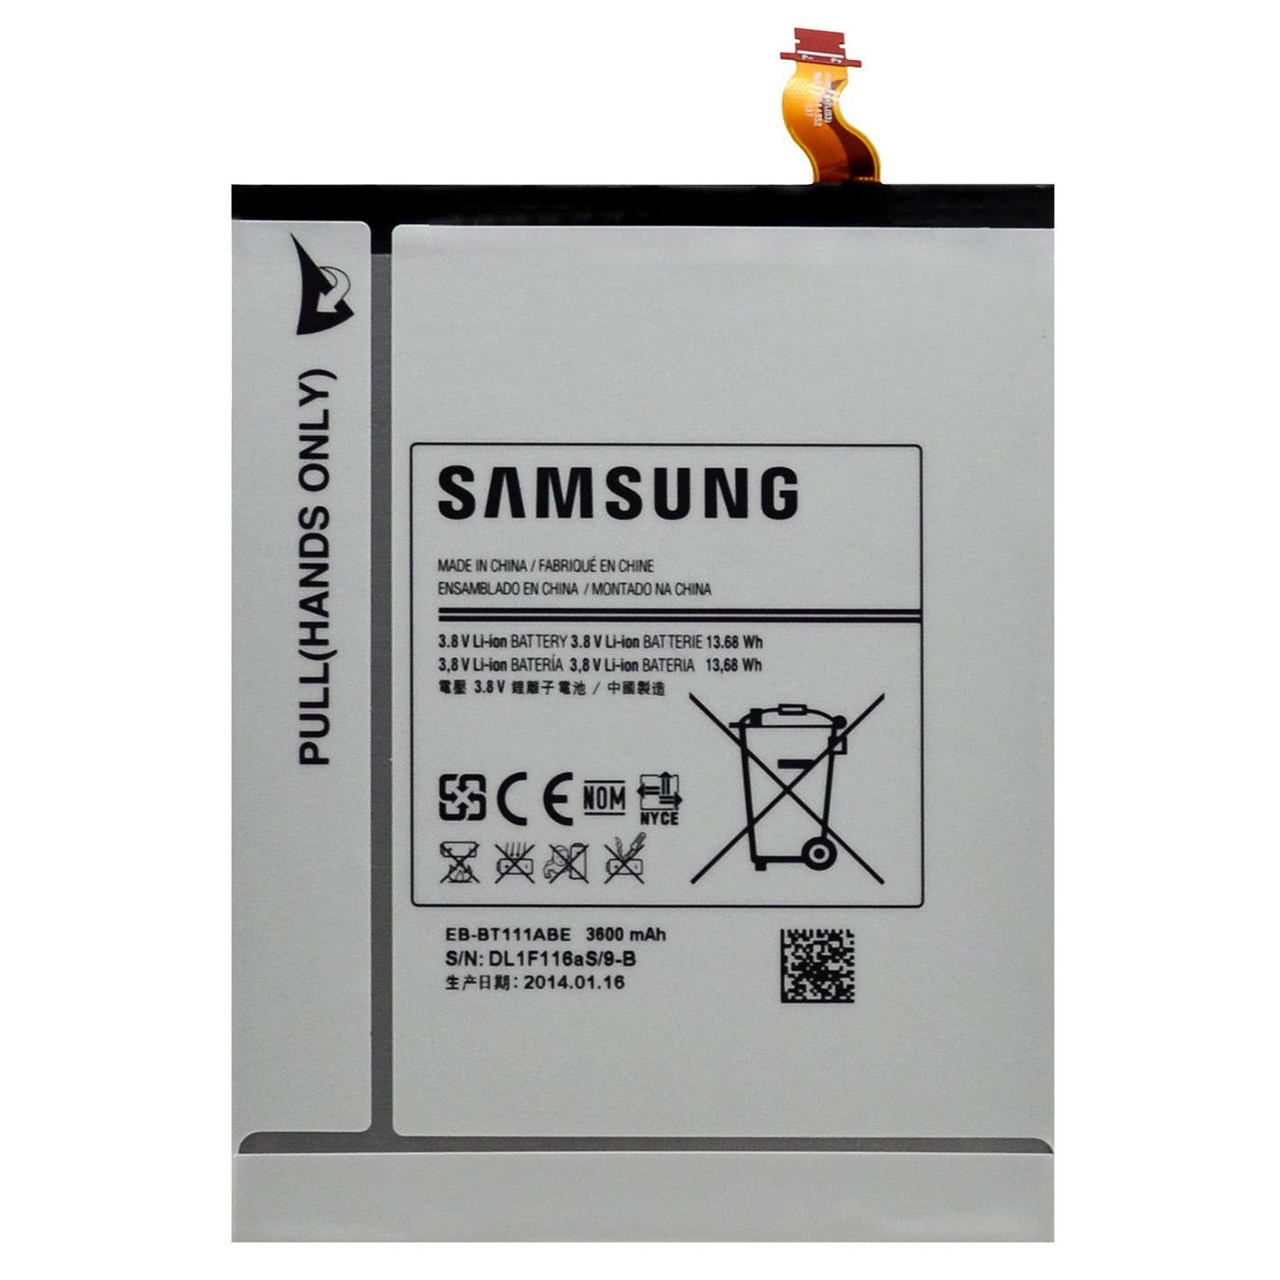 باتری تبلت مدل EB-BT111ABC با ظرفیت 3600 میلی آمپر مناسب تبلت  Galaxy Tab3 7.0 Lite 9                     غیر اصل